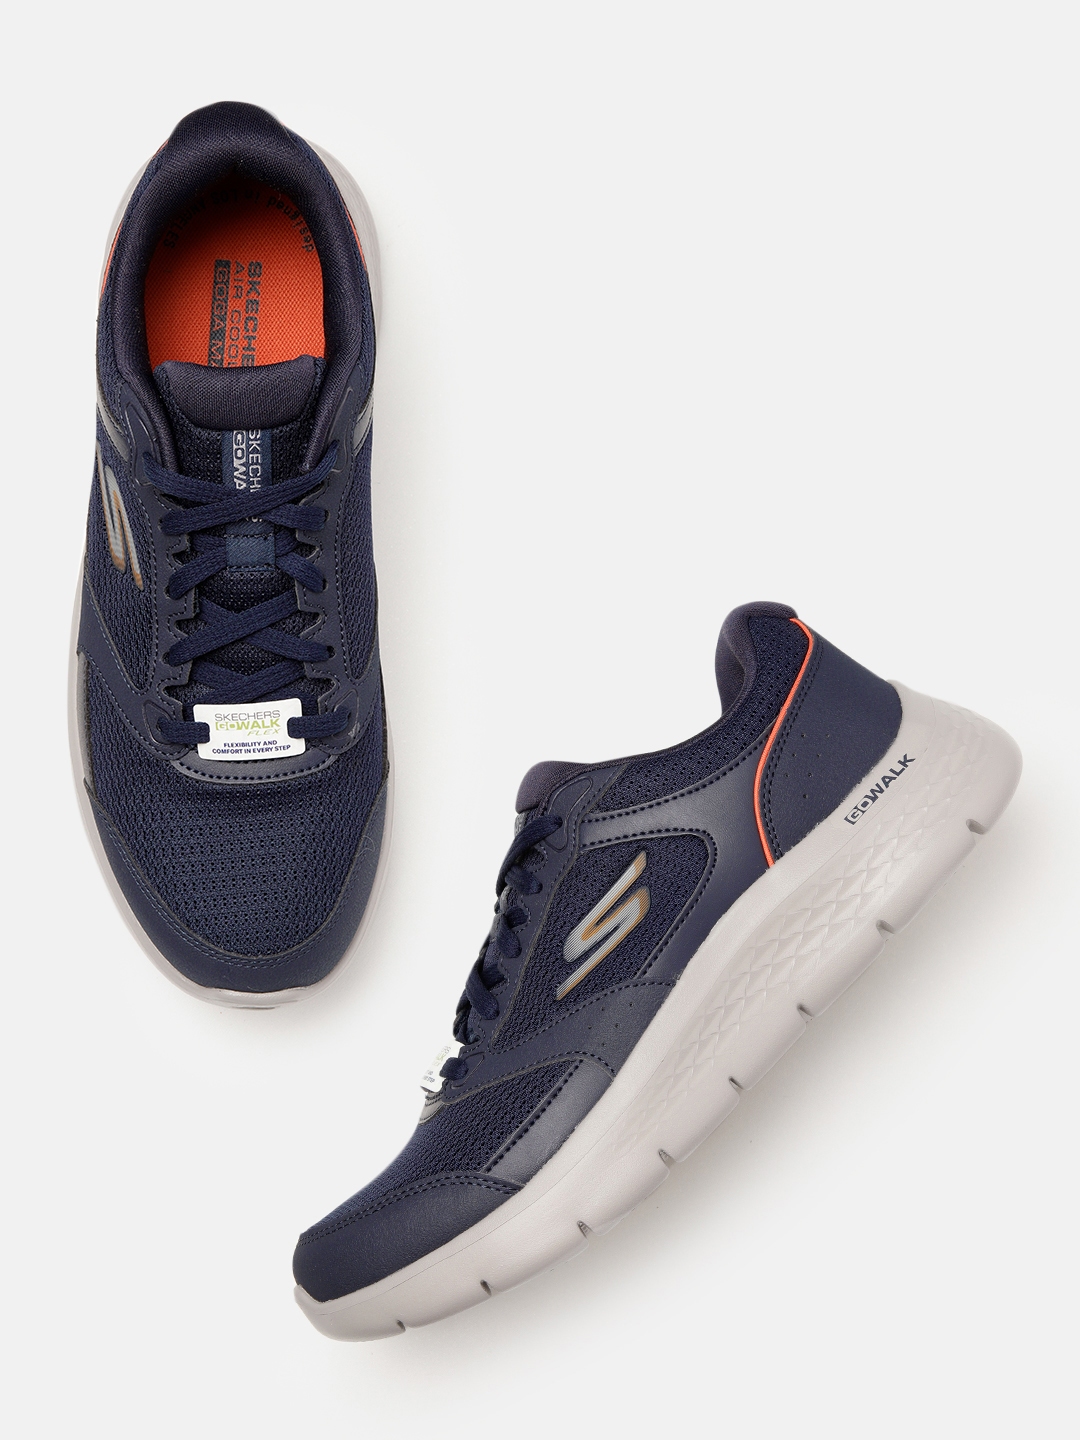 Buy Skechers Men Navy Blue Go Walk Flex Walking Shoes - Sports Shoes ...